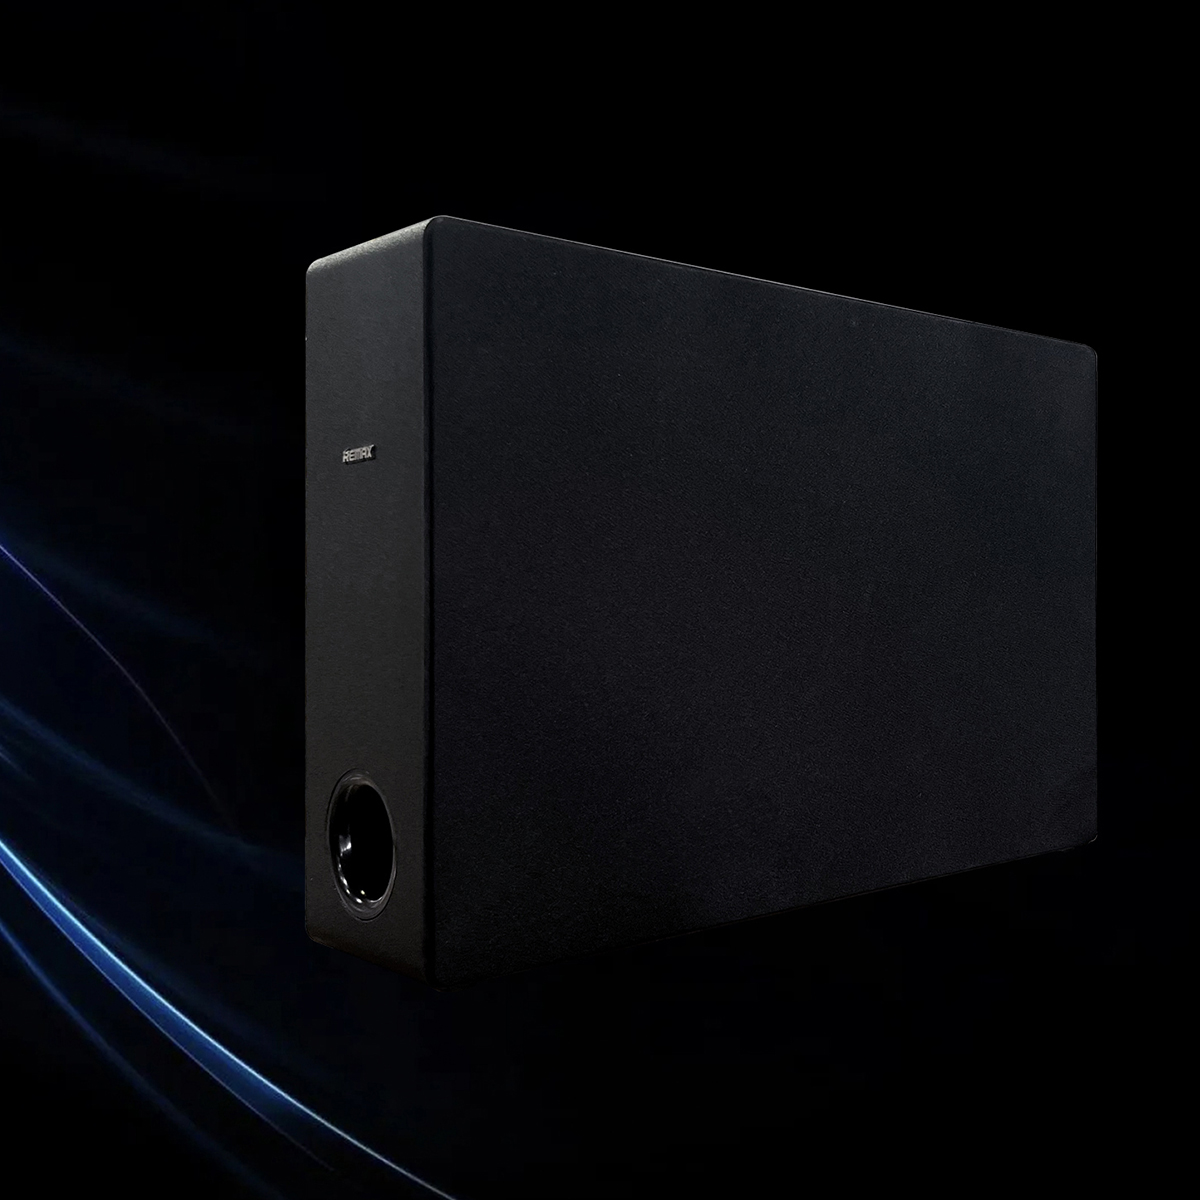 Loa Bluetooth Soundbar 100W Remax RTS-60 2.1 Deep Bass - Trang bị loa siêu trầm không dây - HÀNG CHÍNH HÃNG Remax  - Bảo Hành 1 Đổi 1 Trong 12 Tháng